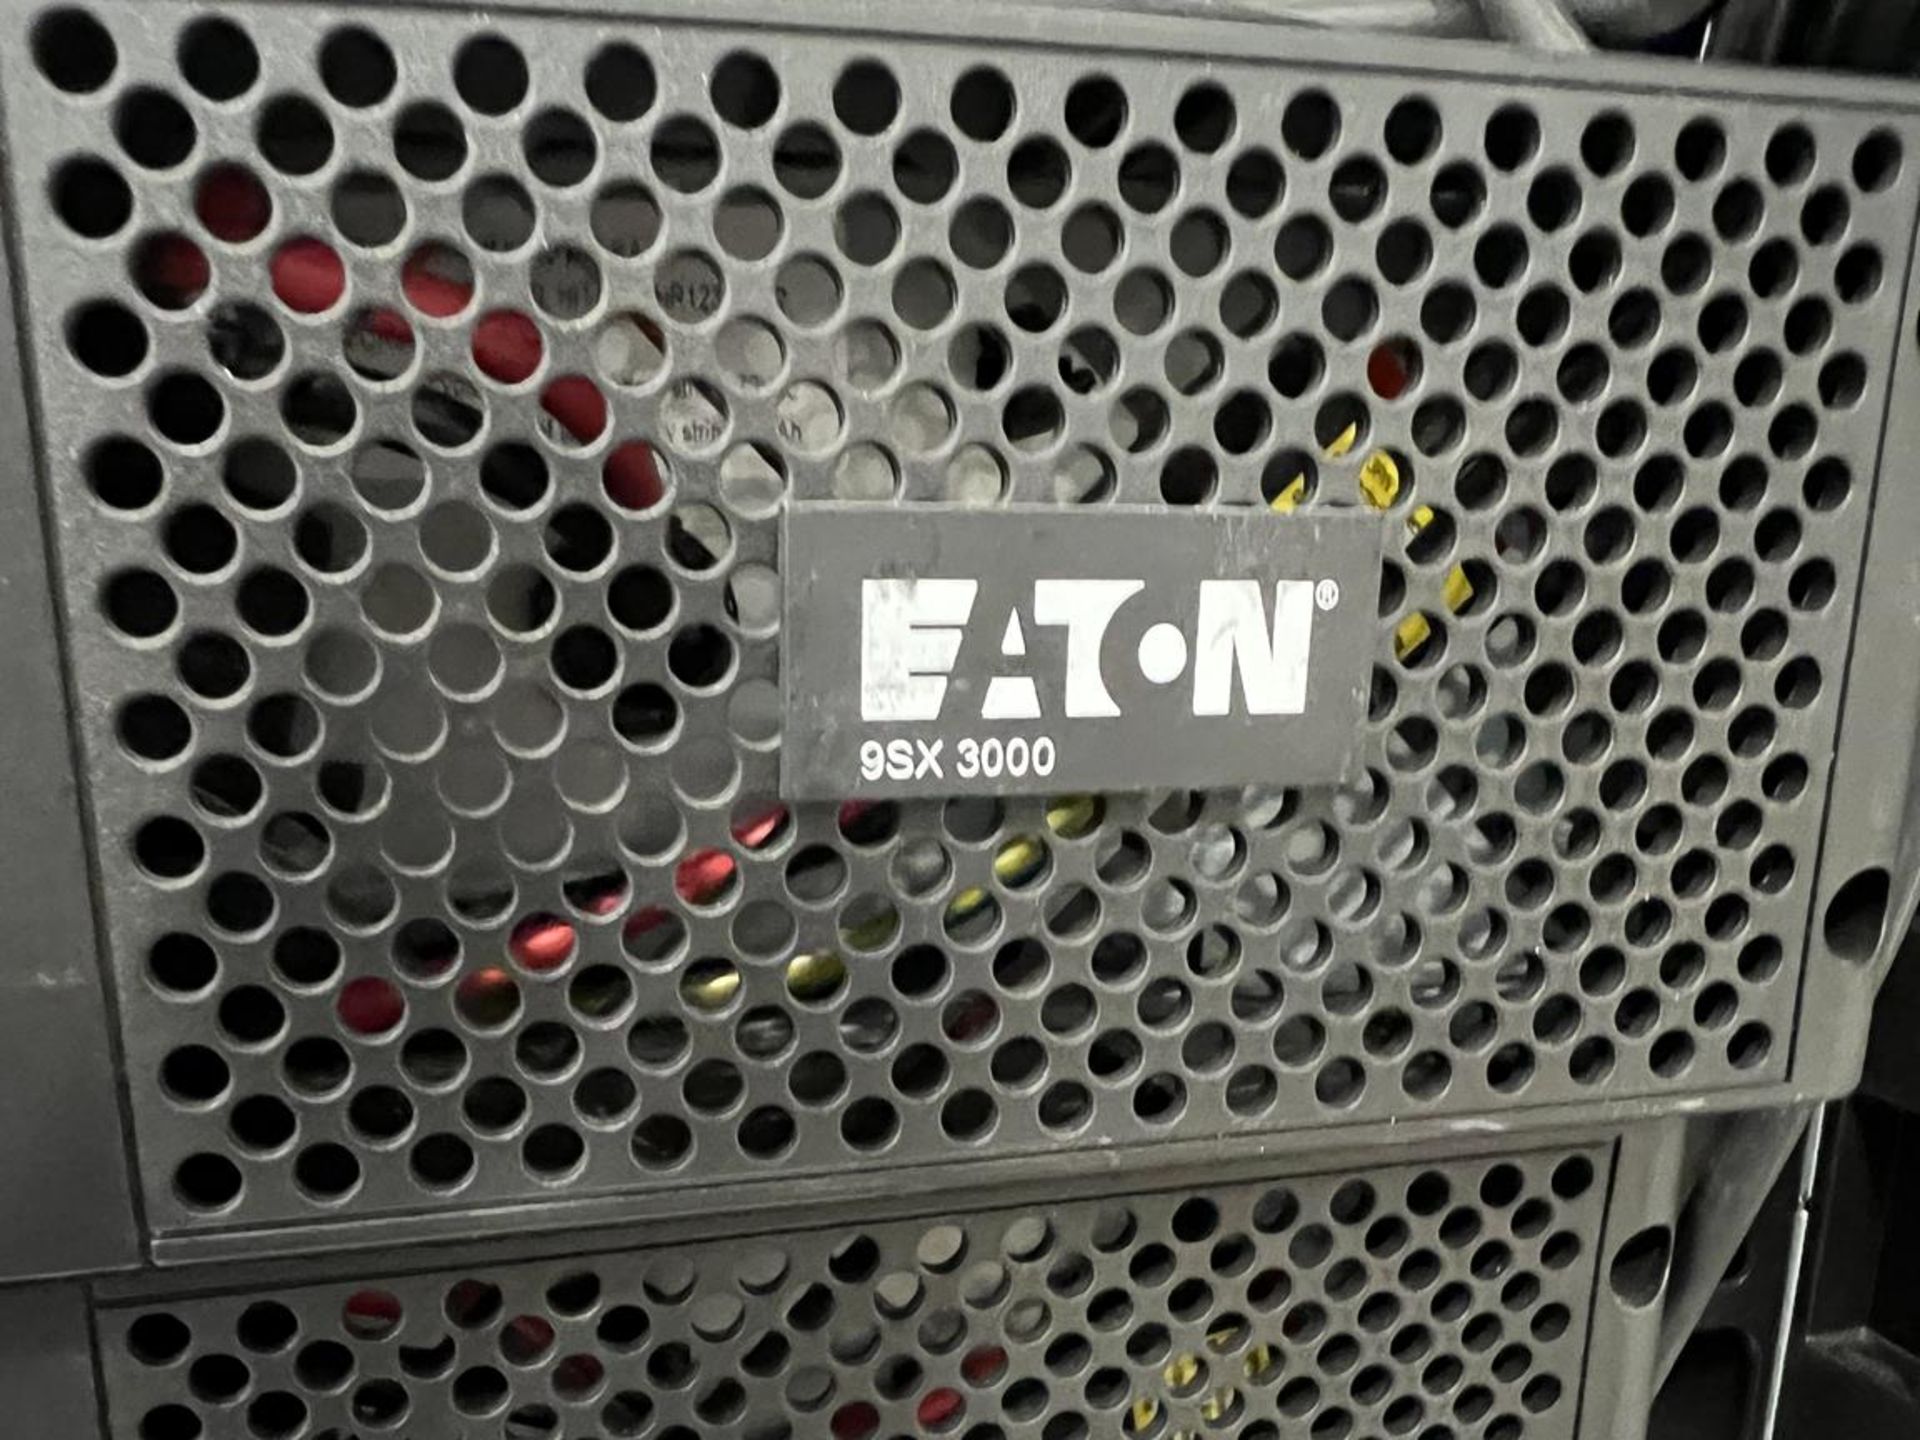 4x (no.) Eaton 9SX-3000 UPS and 5x (no.) Eaton 9SX 2000 UPS units with 4x (no.) Eaton Hotswap MBP 60 - Image 11 of 11